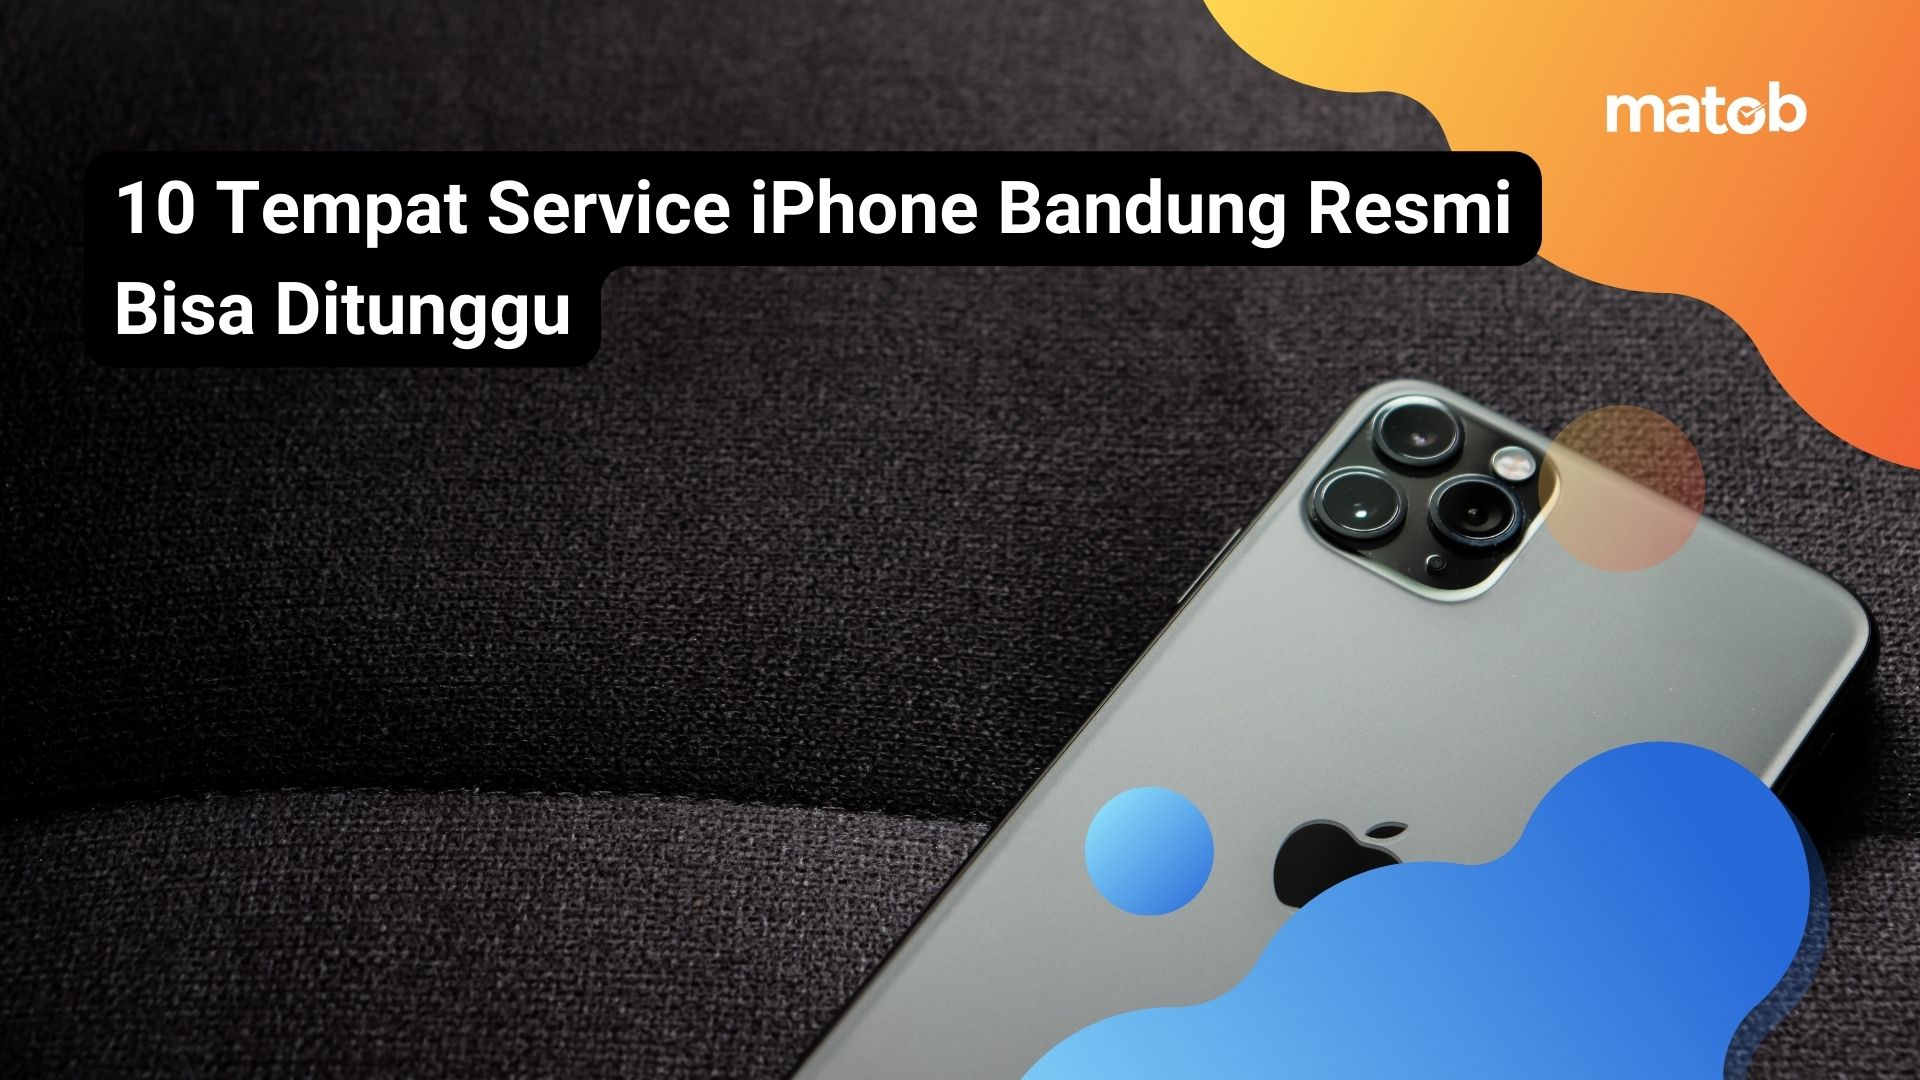 10 Tempat Service iPhone Bandung Resmi Bisa Ditunggu